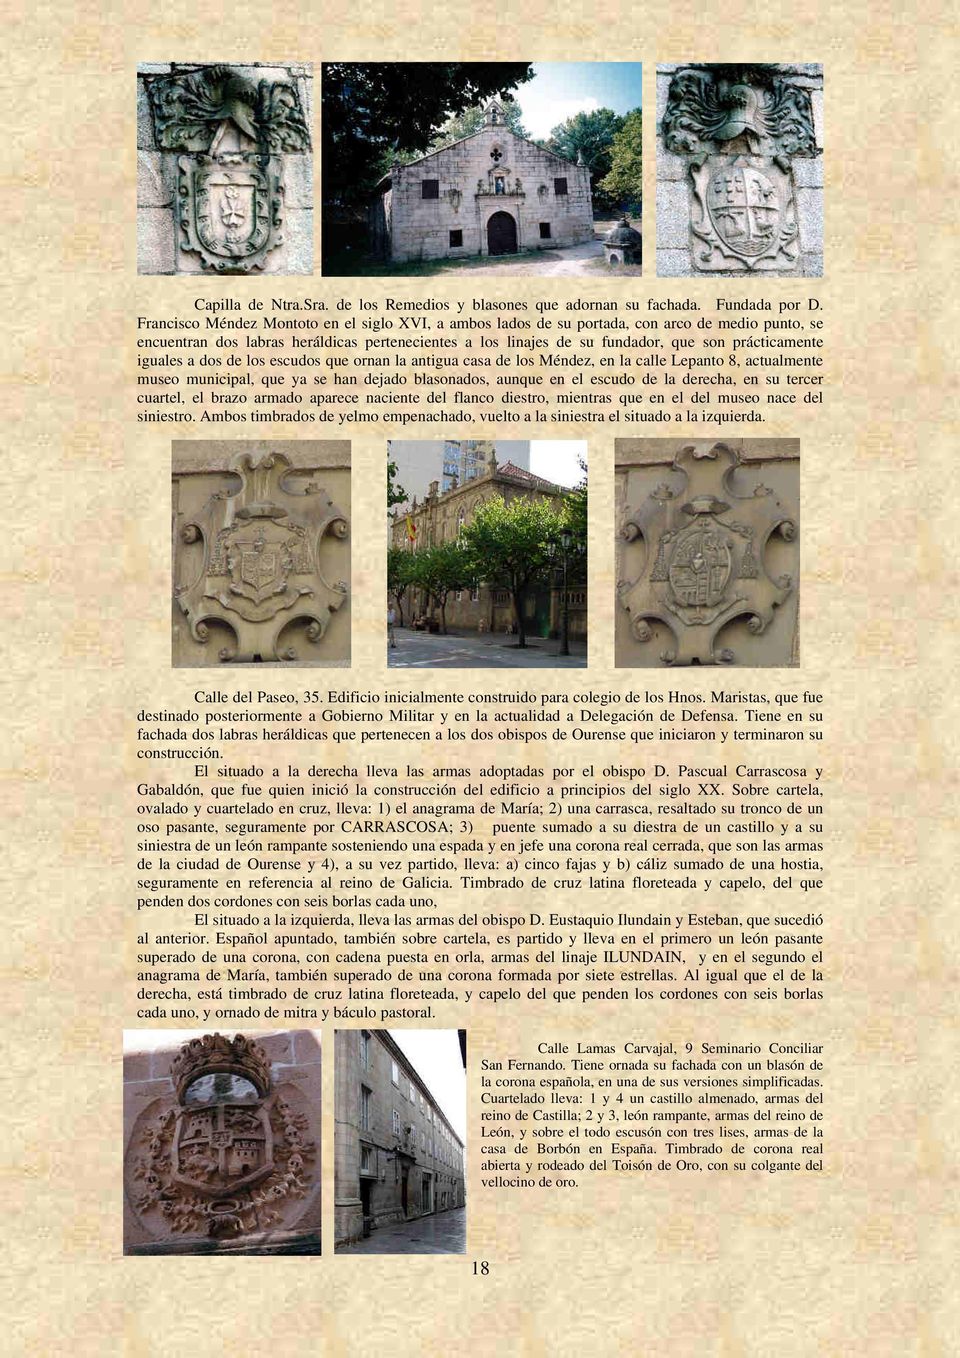 iguales a dos de los escudos que ornan la antigua casa de los Méndez, en la calle Lepanto 8, actualmente museo municipal, que ya se han dejado blasonados, aunque en el escudo de la derecha, en su